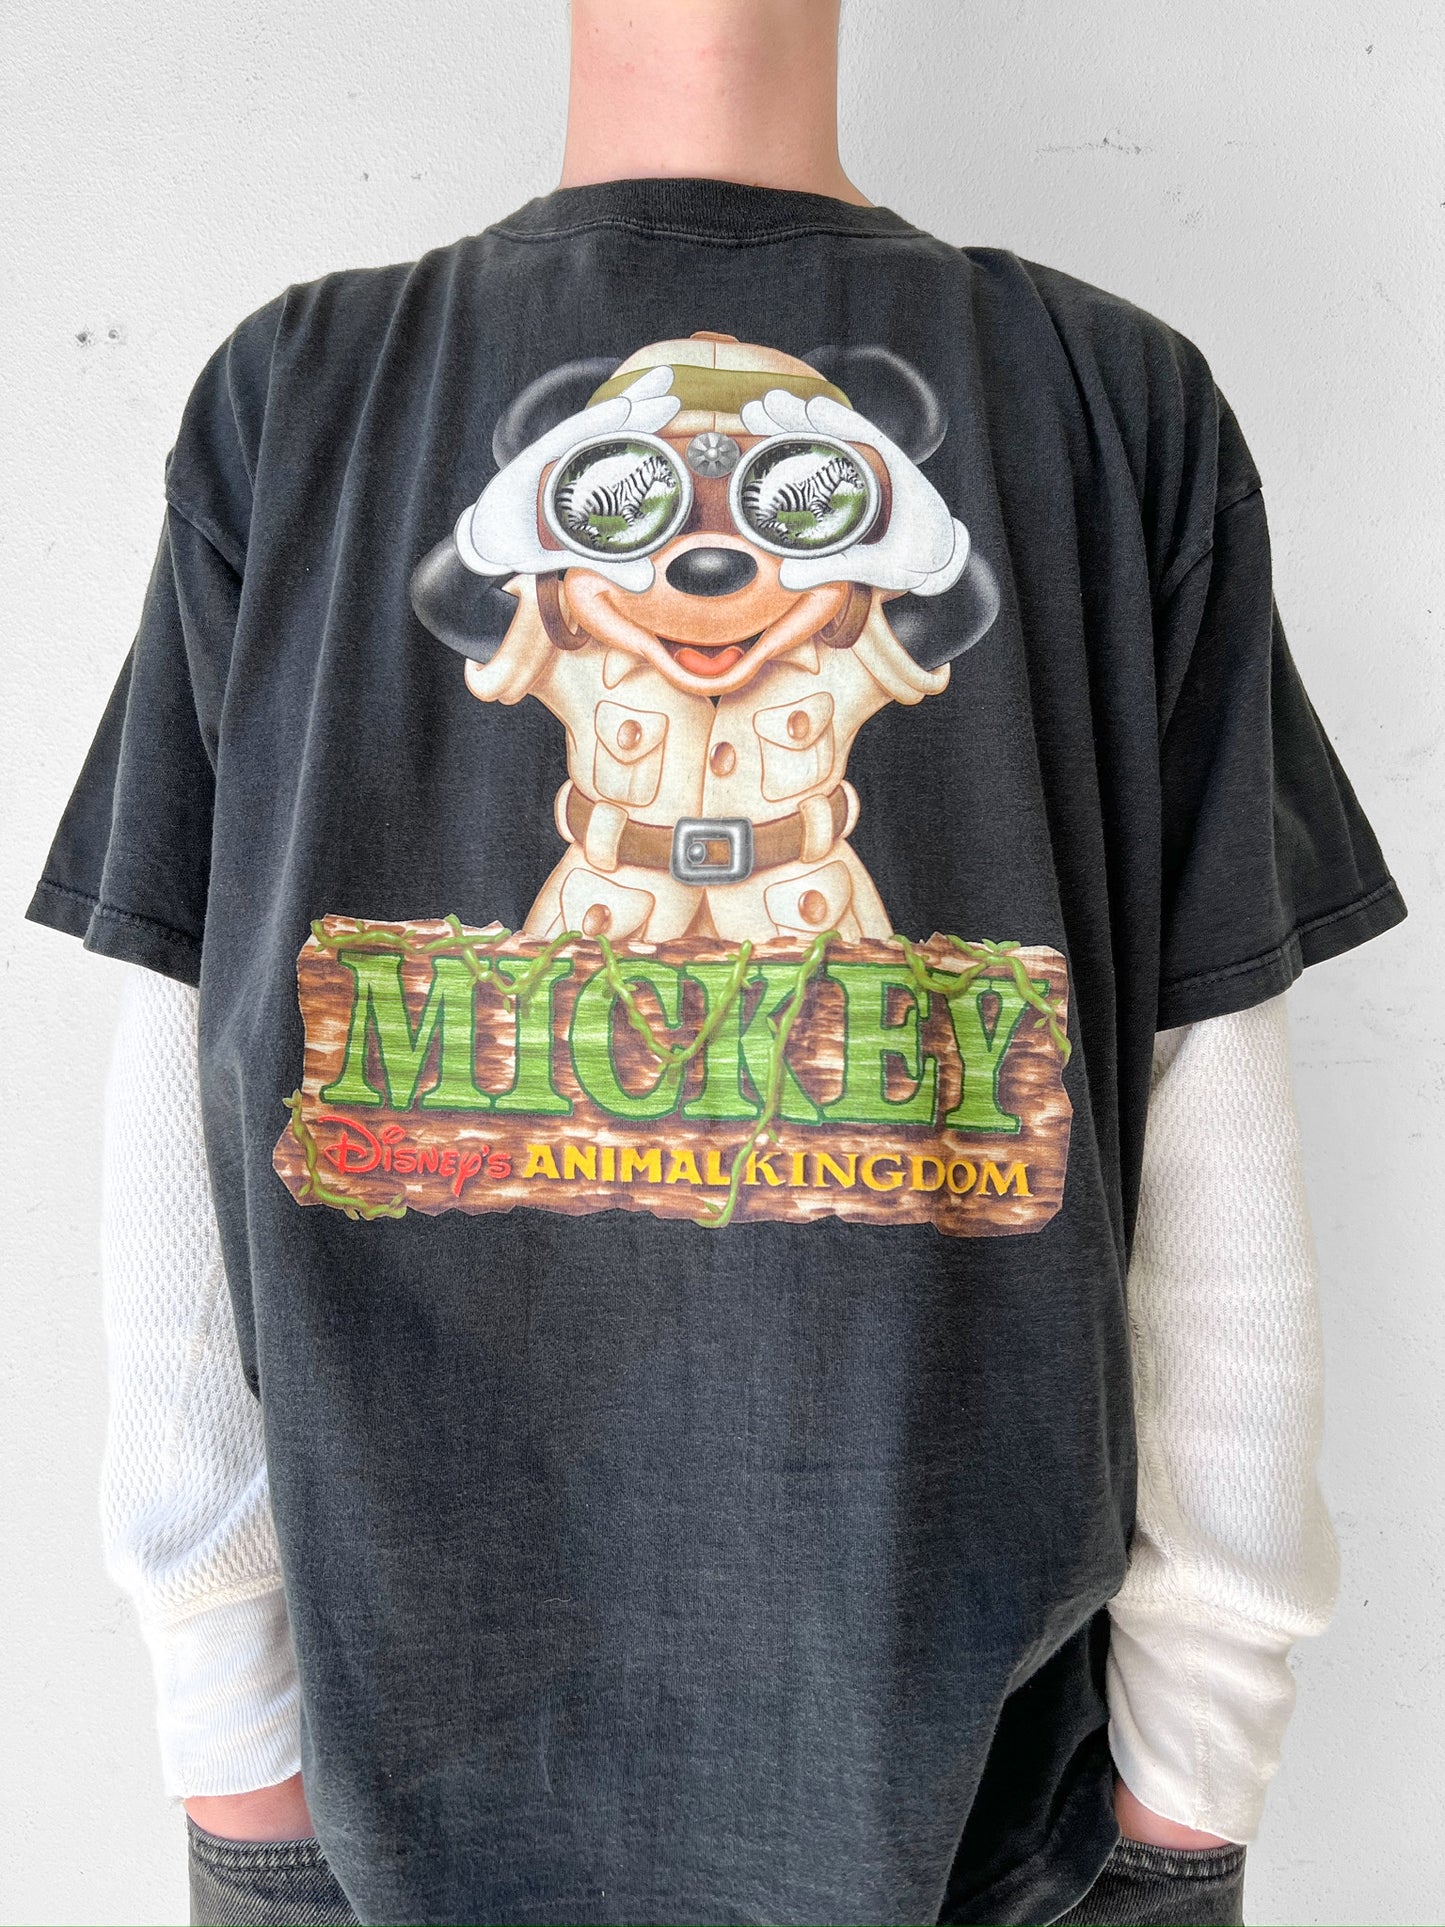 Disney Mickey Mouse Animal Kingdom Shirt - XXL